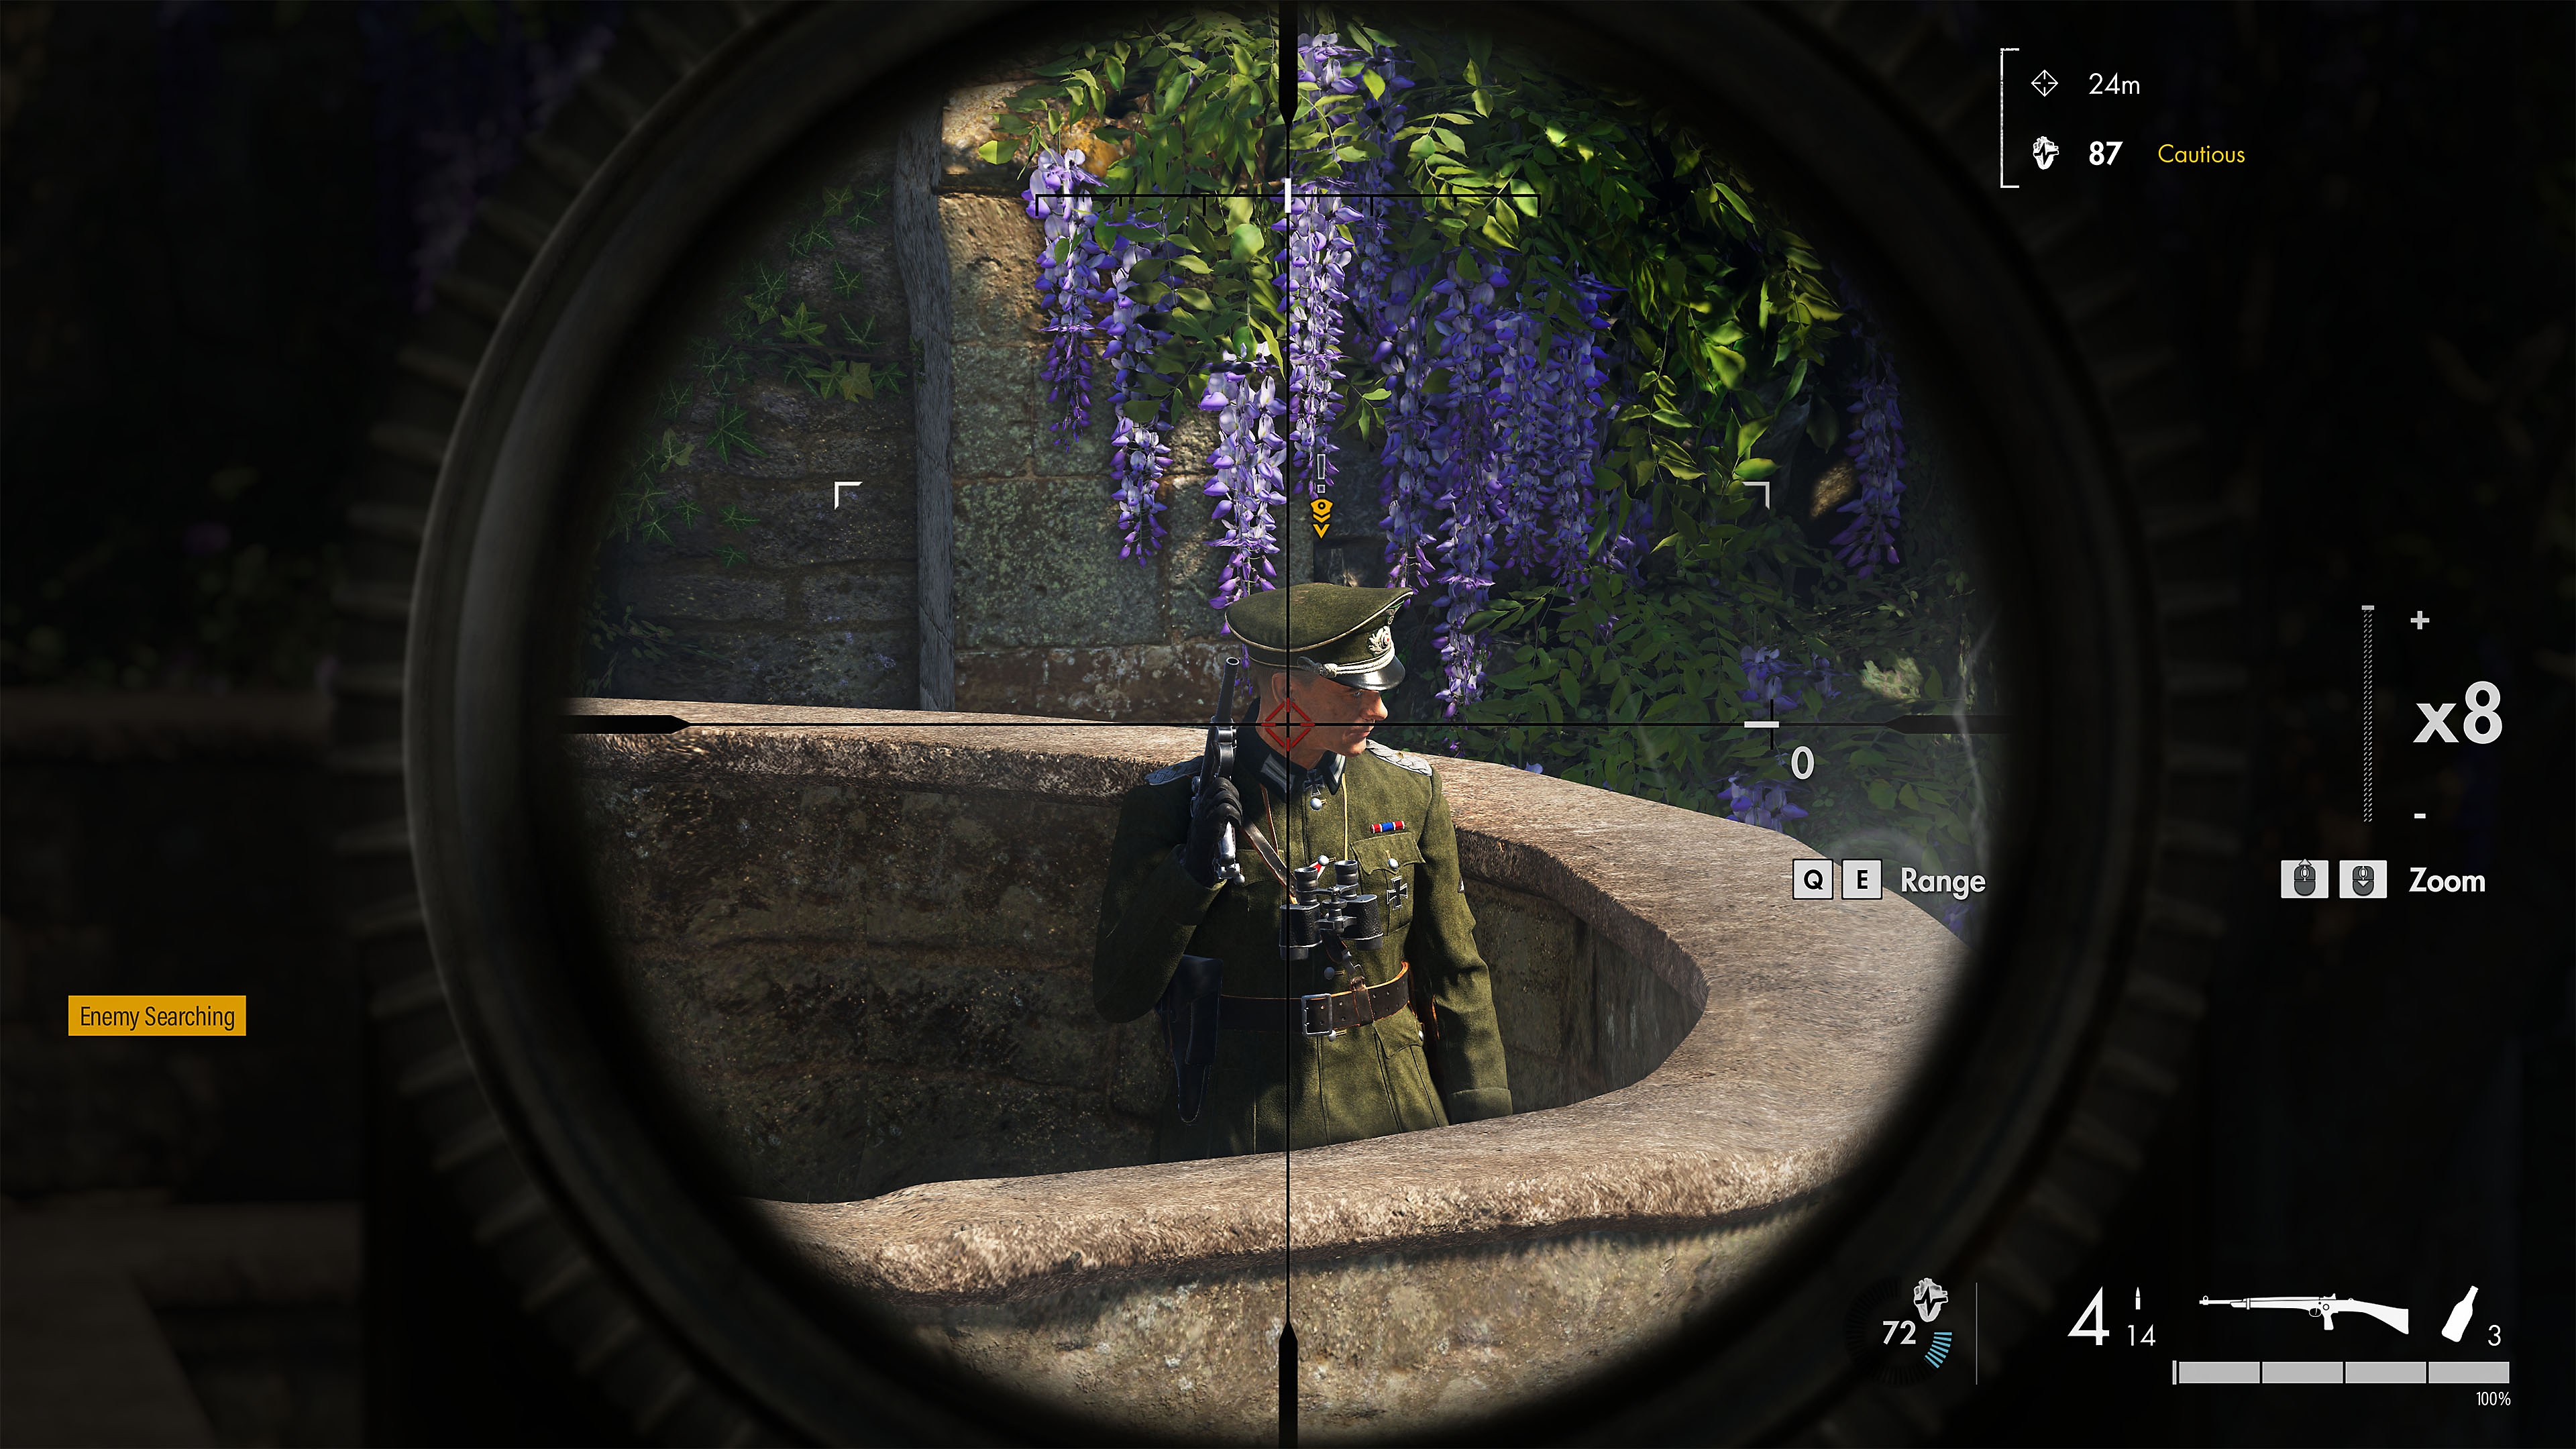 Sniper Elite 5 – kuvakaappaus vihollisesta tarkka-ampujan tähtäimessä